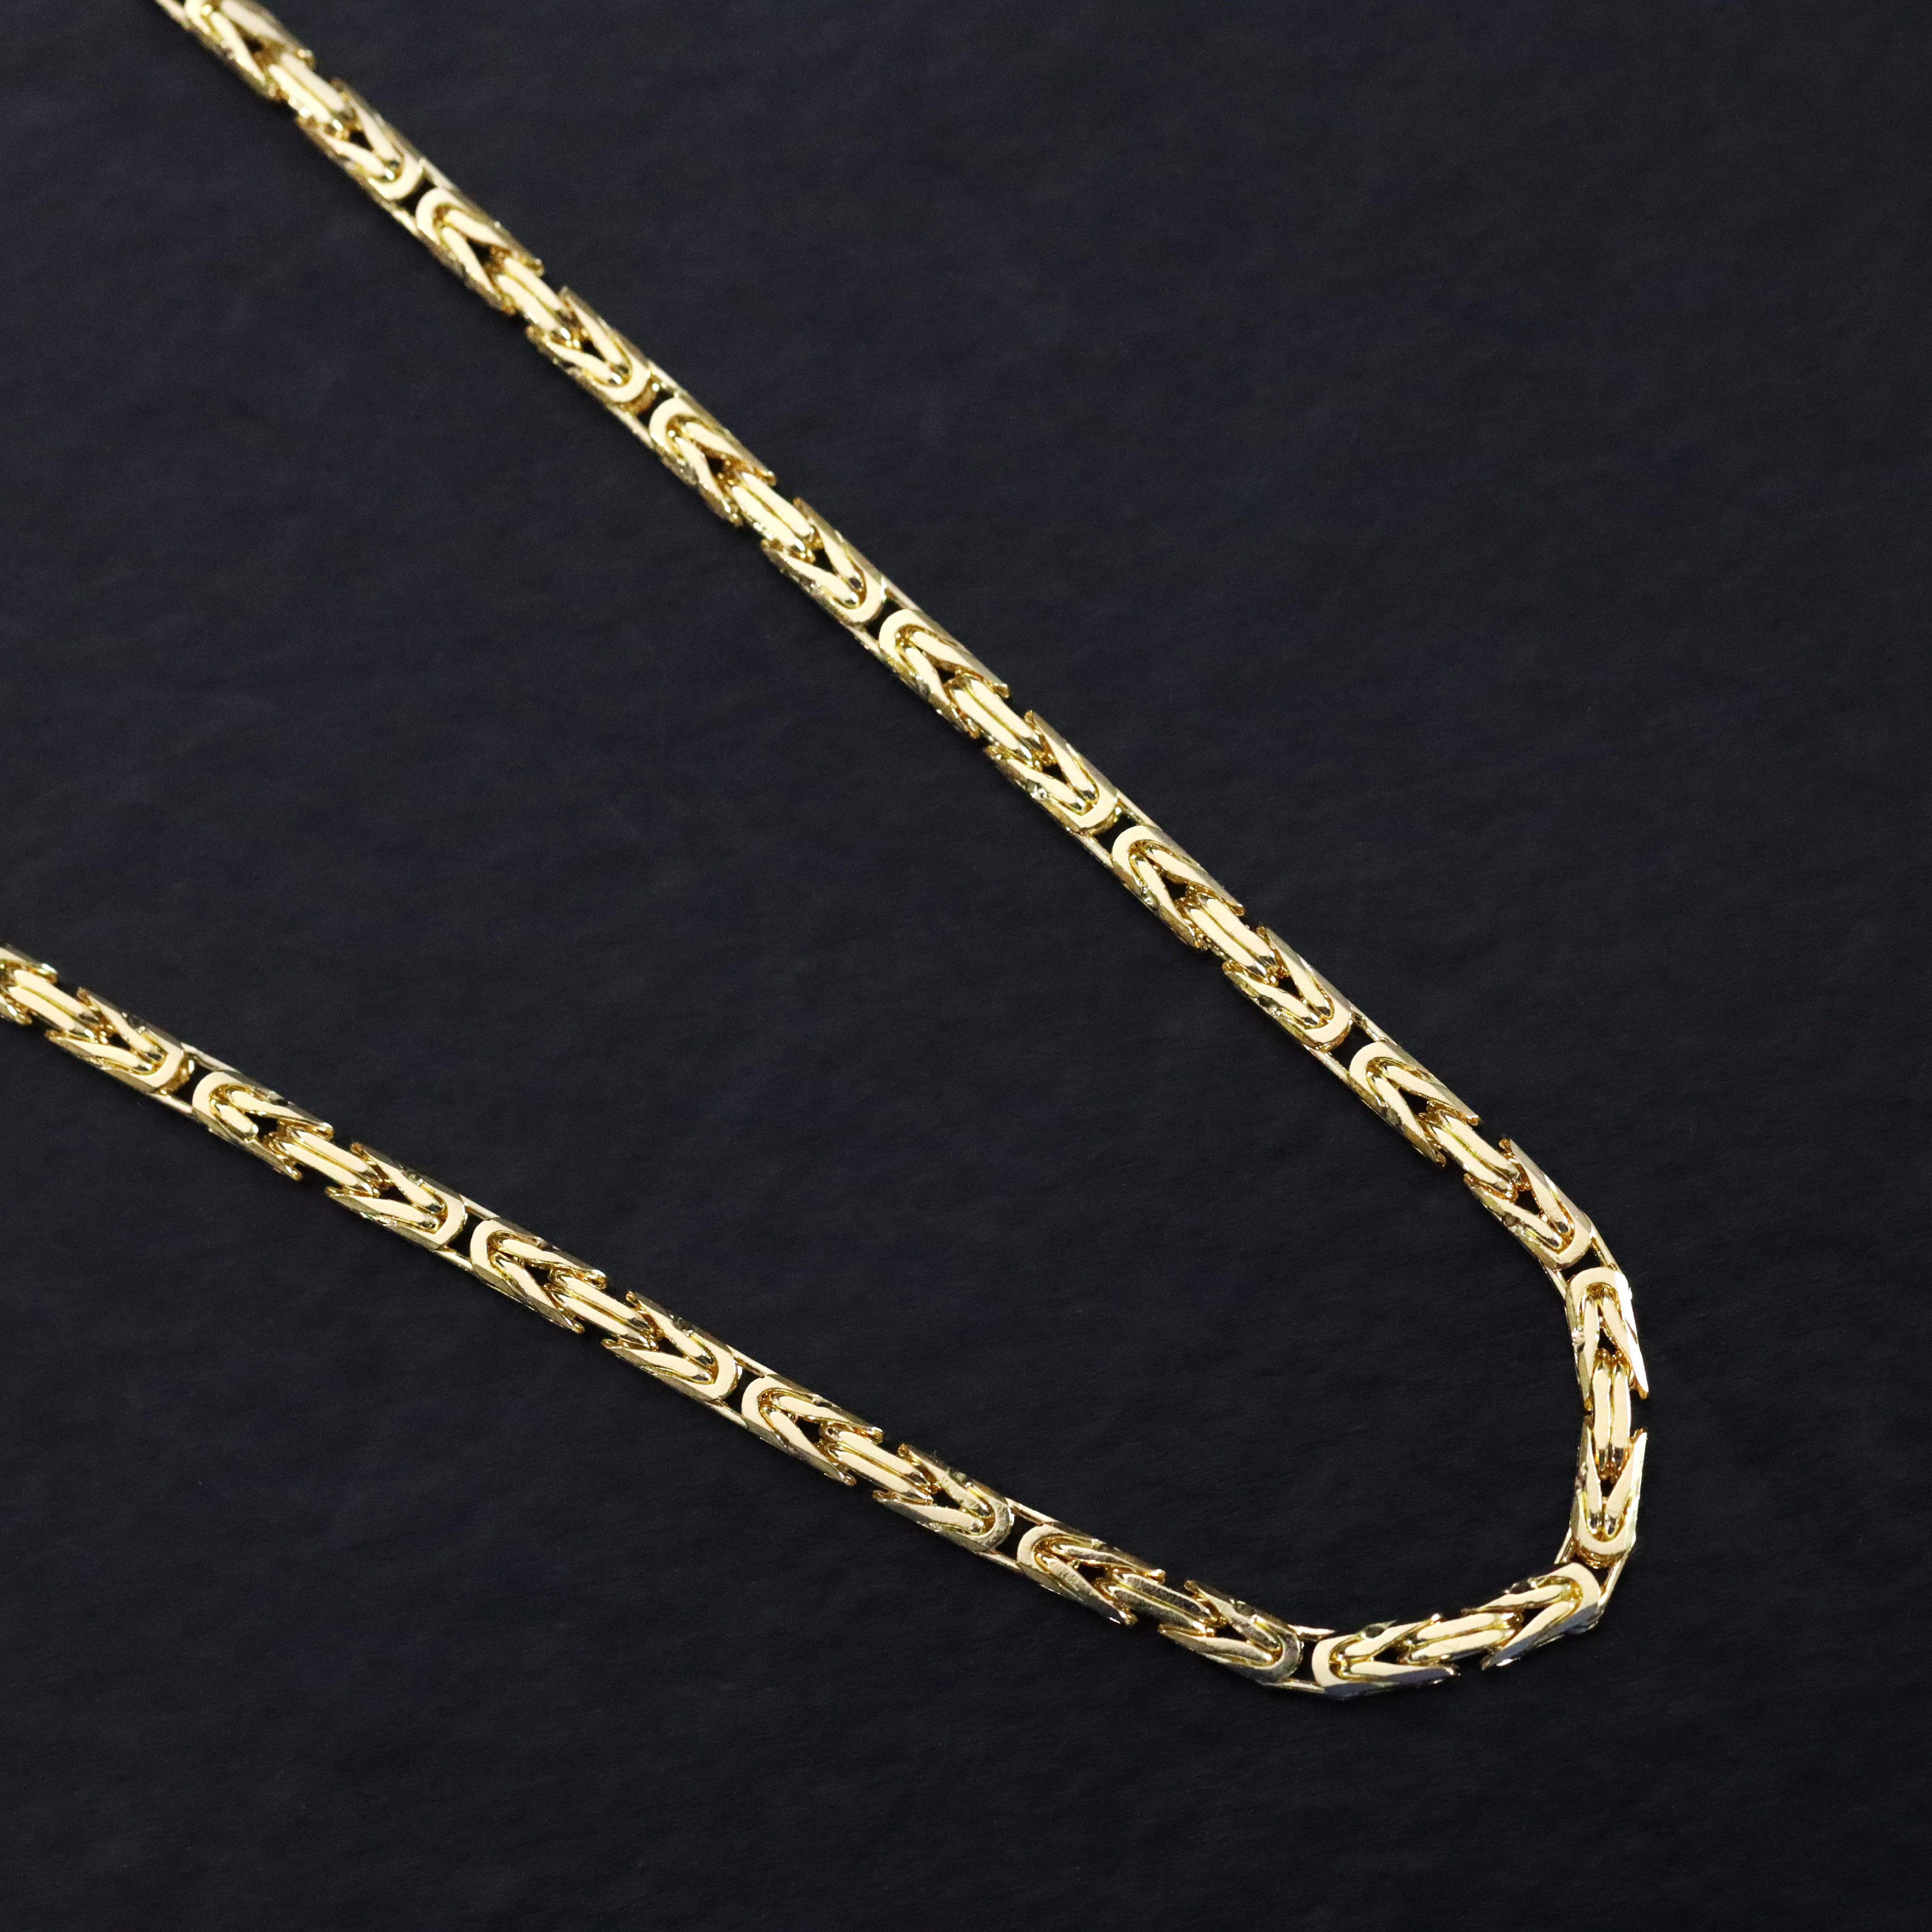 18K 750 Gold Königskette 2,2mm breit 50cm lang - Taipan Schmuck